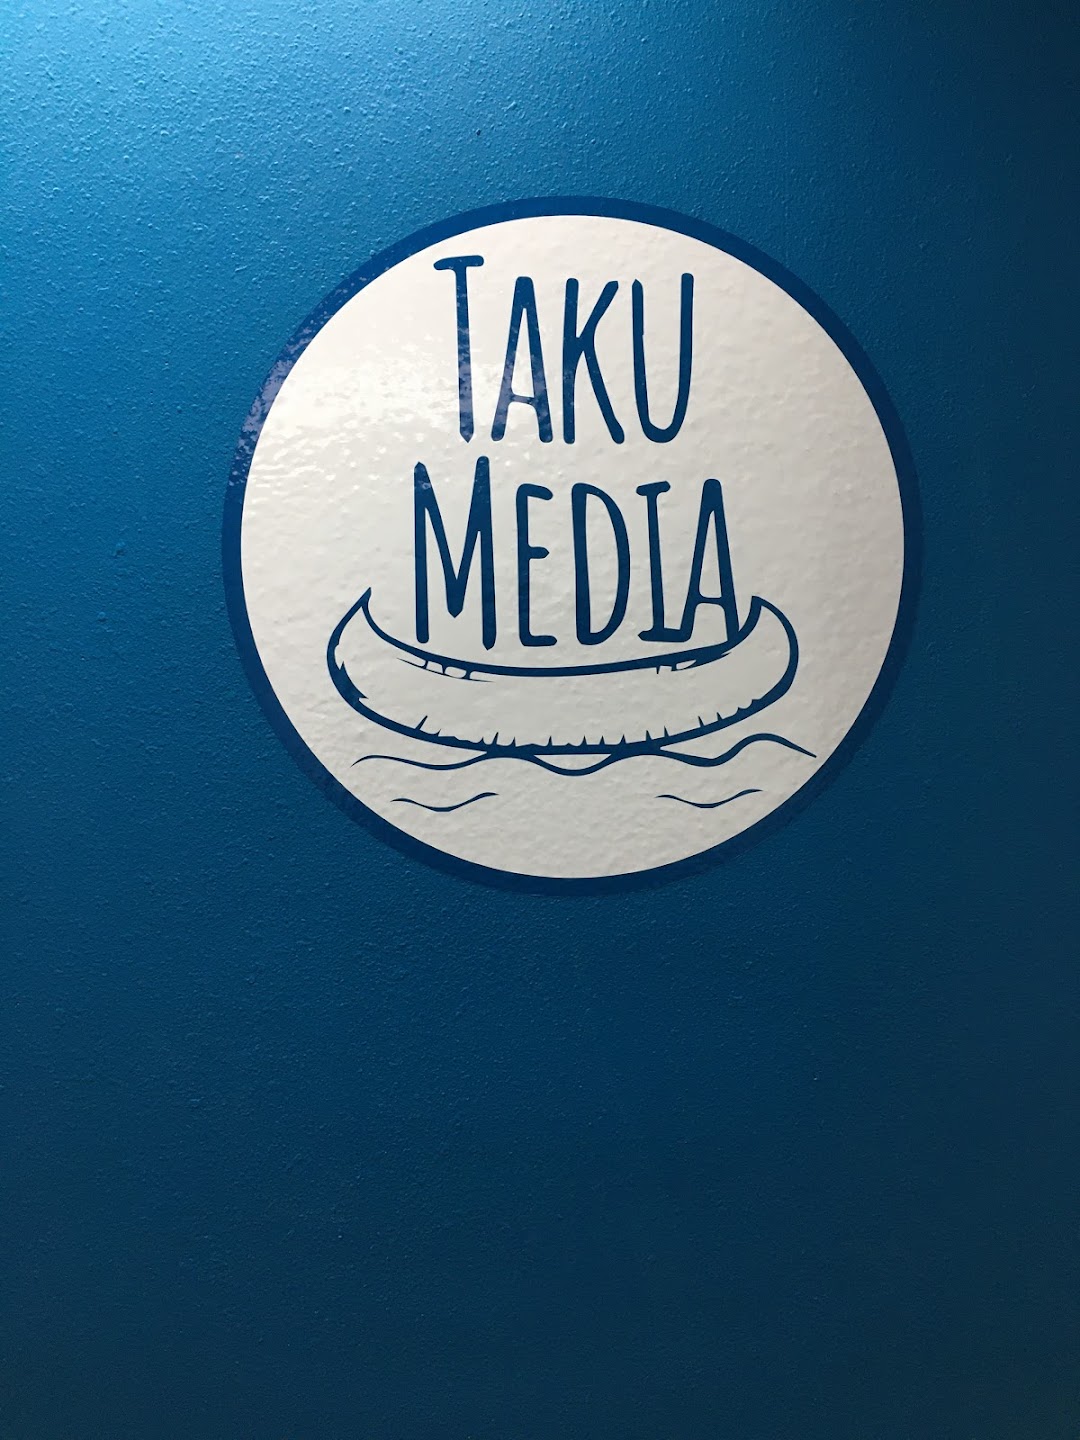 Taku Media LLC